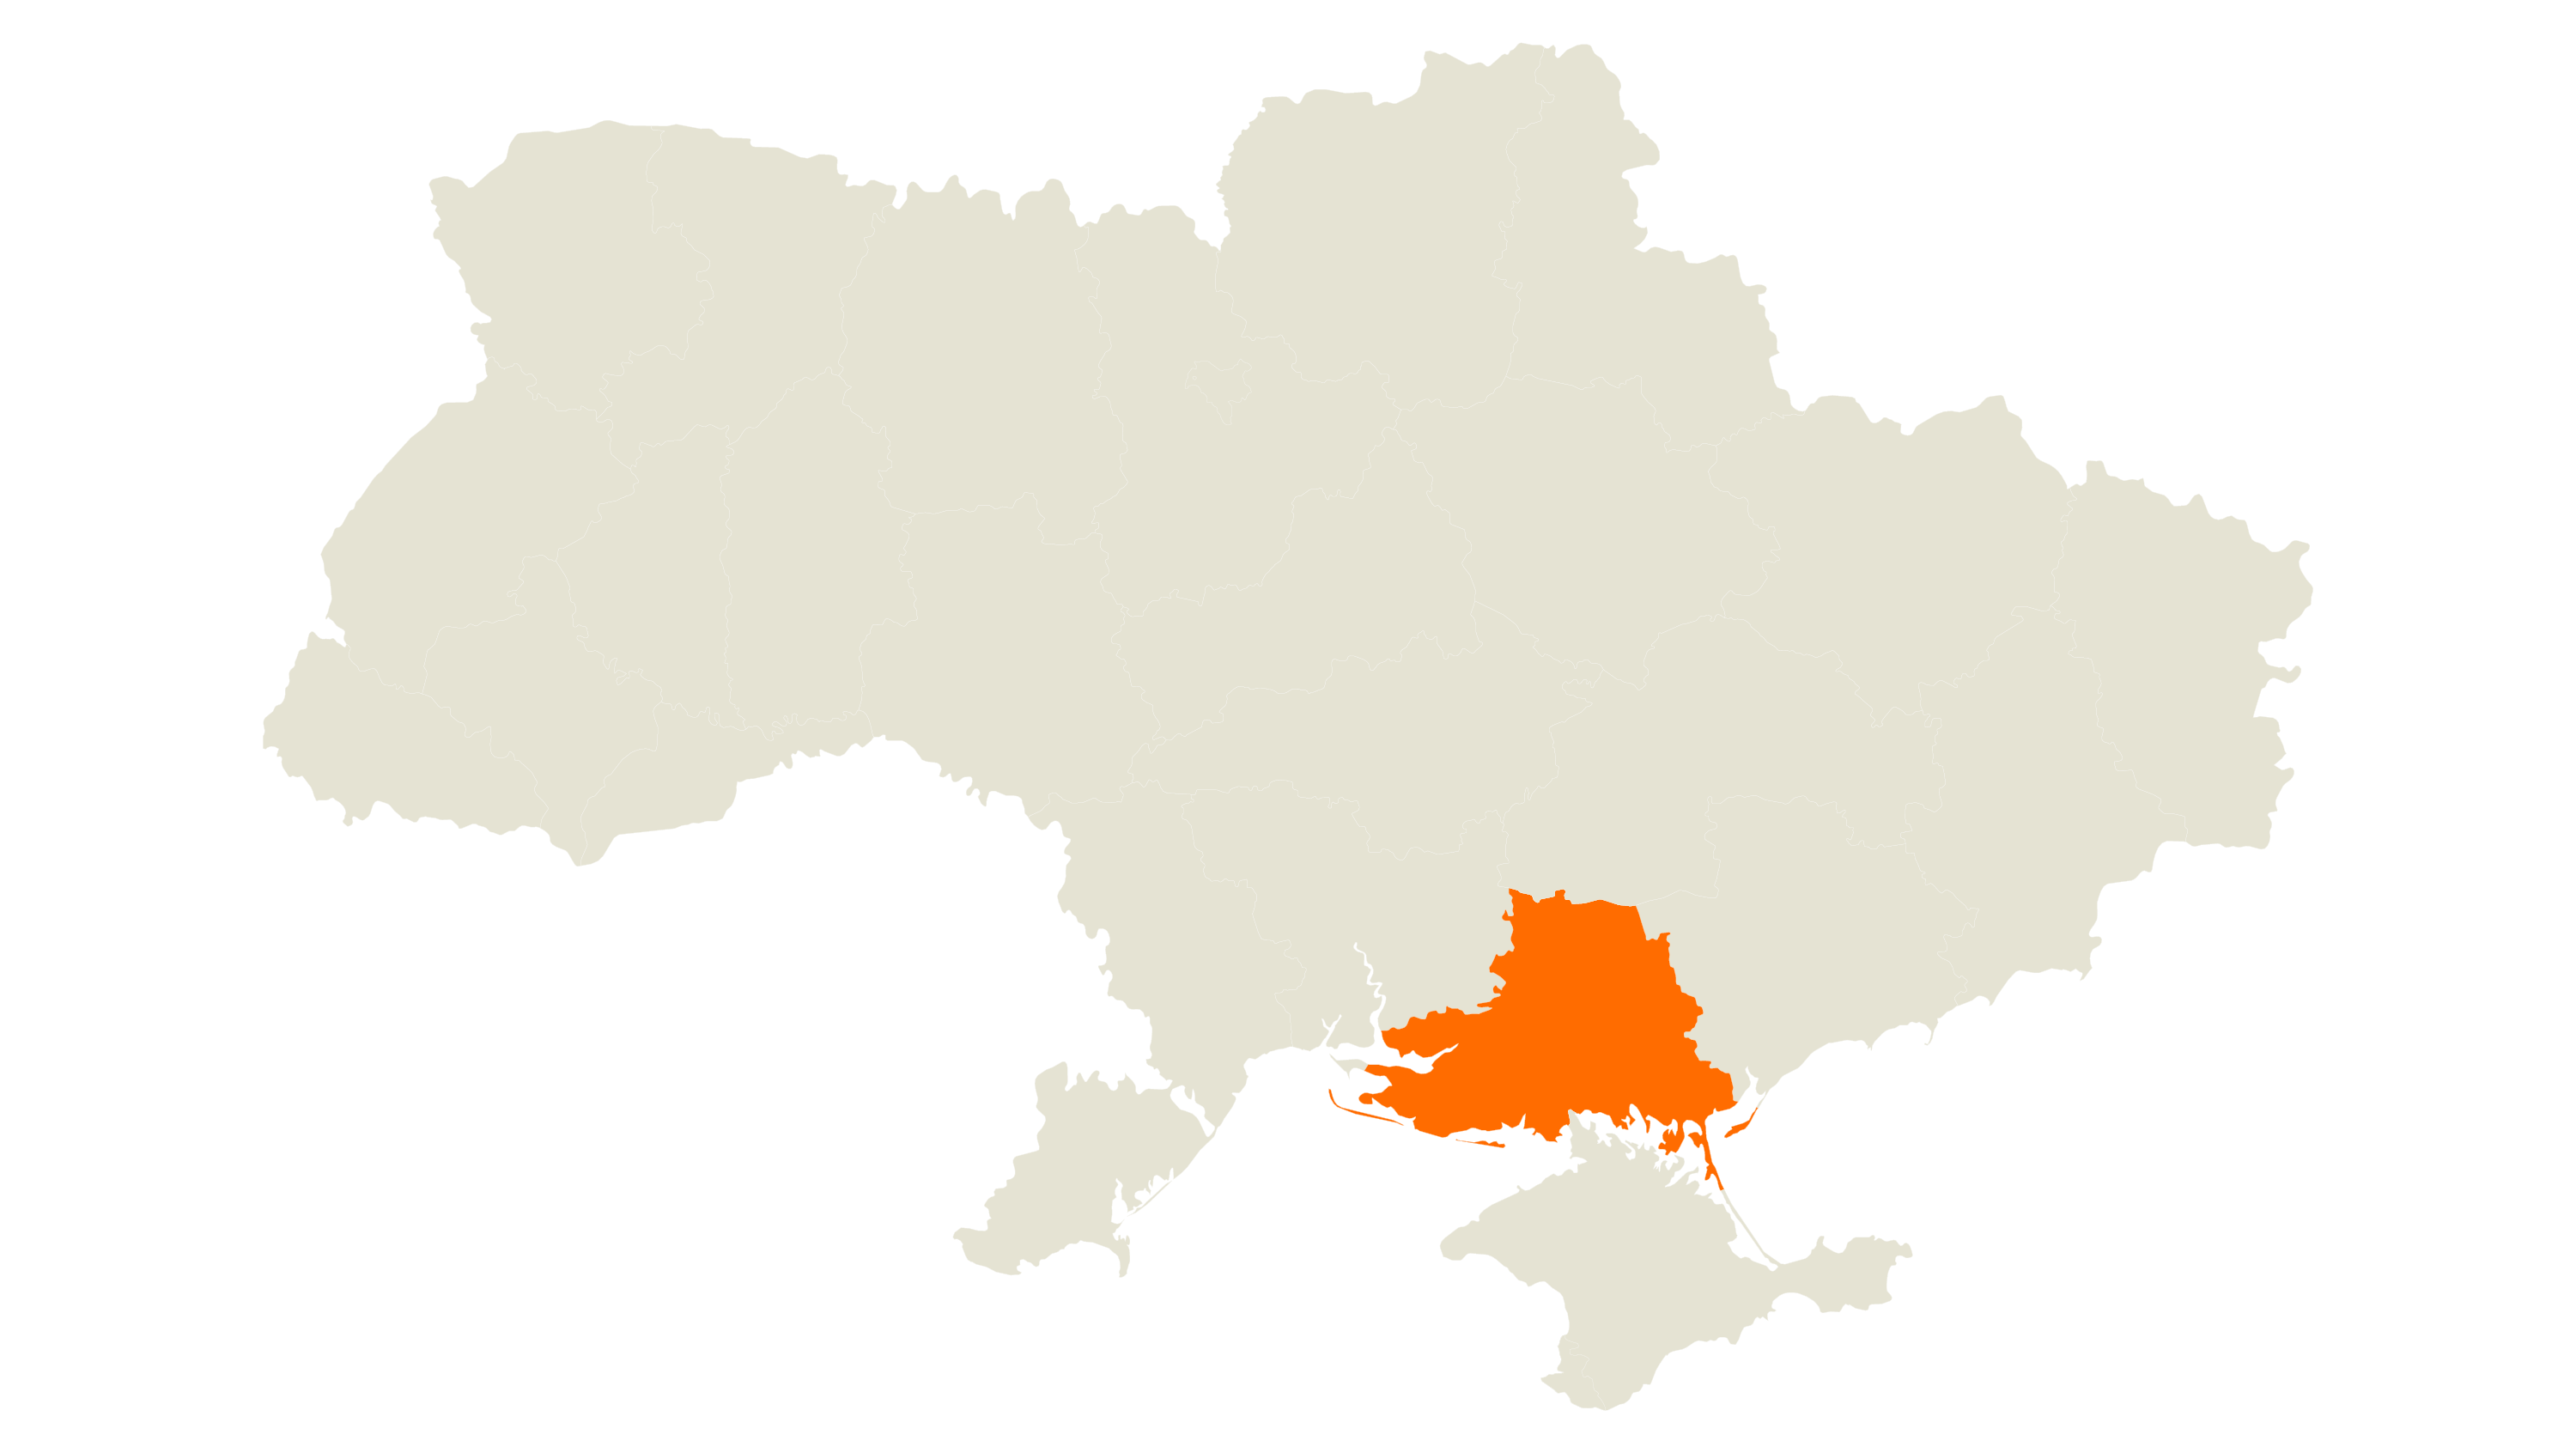 KWS-UA-Consultant-Map-Kukurudza-Kherson.png